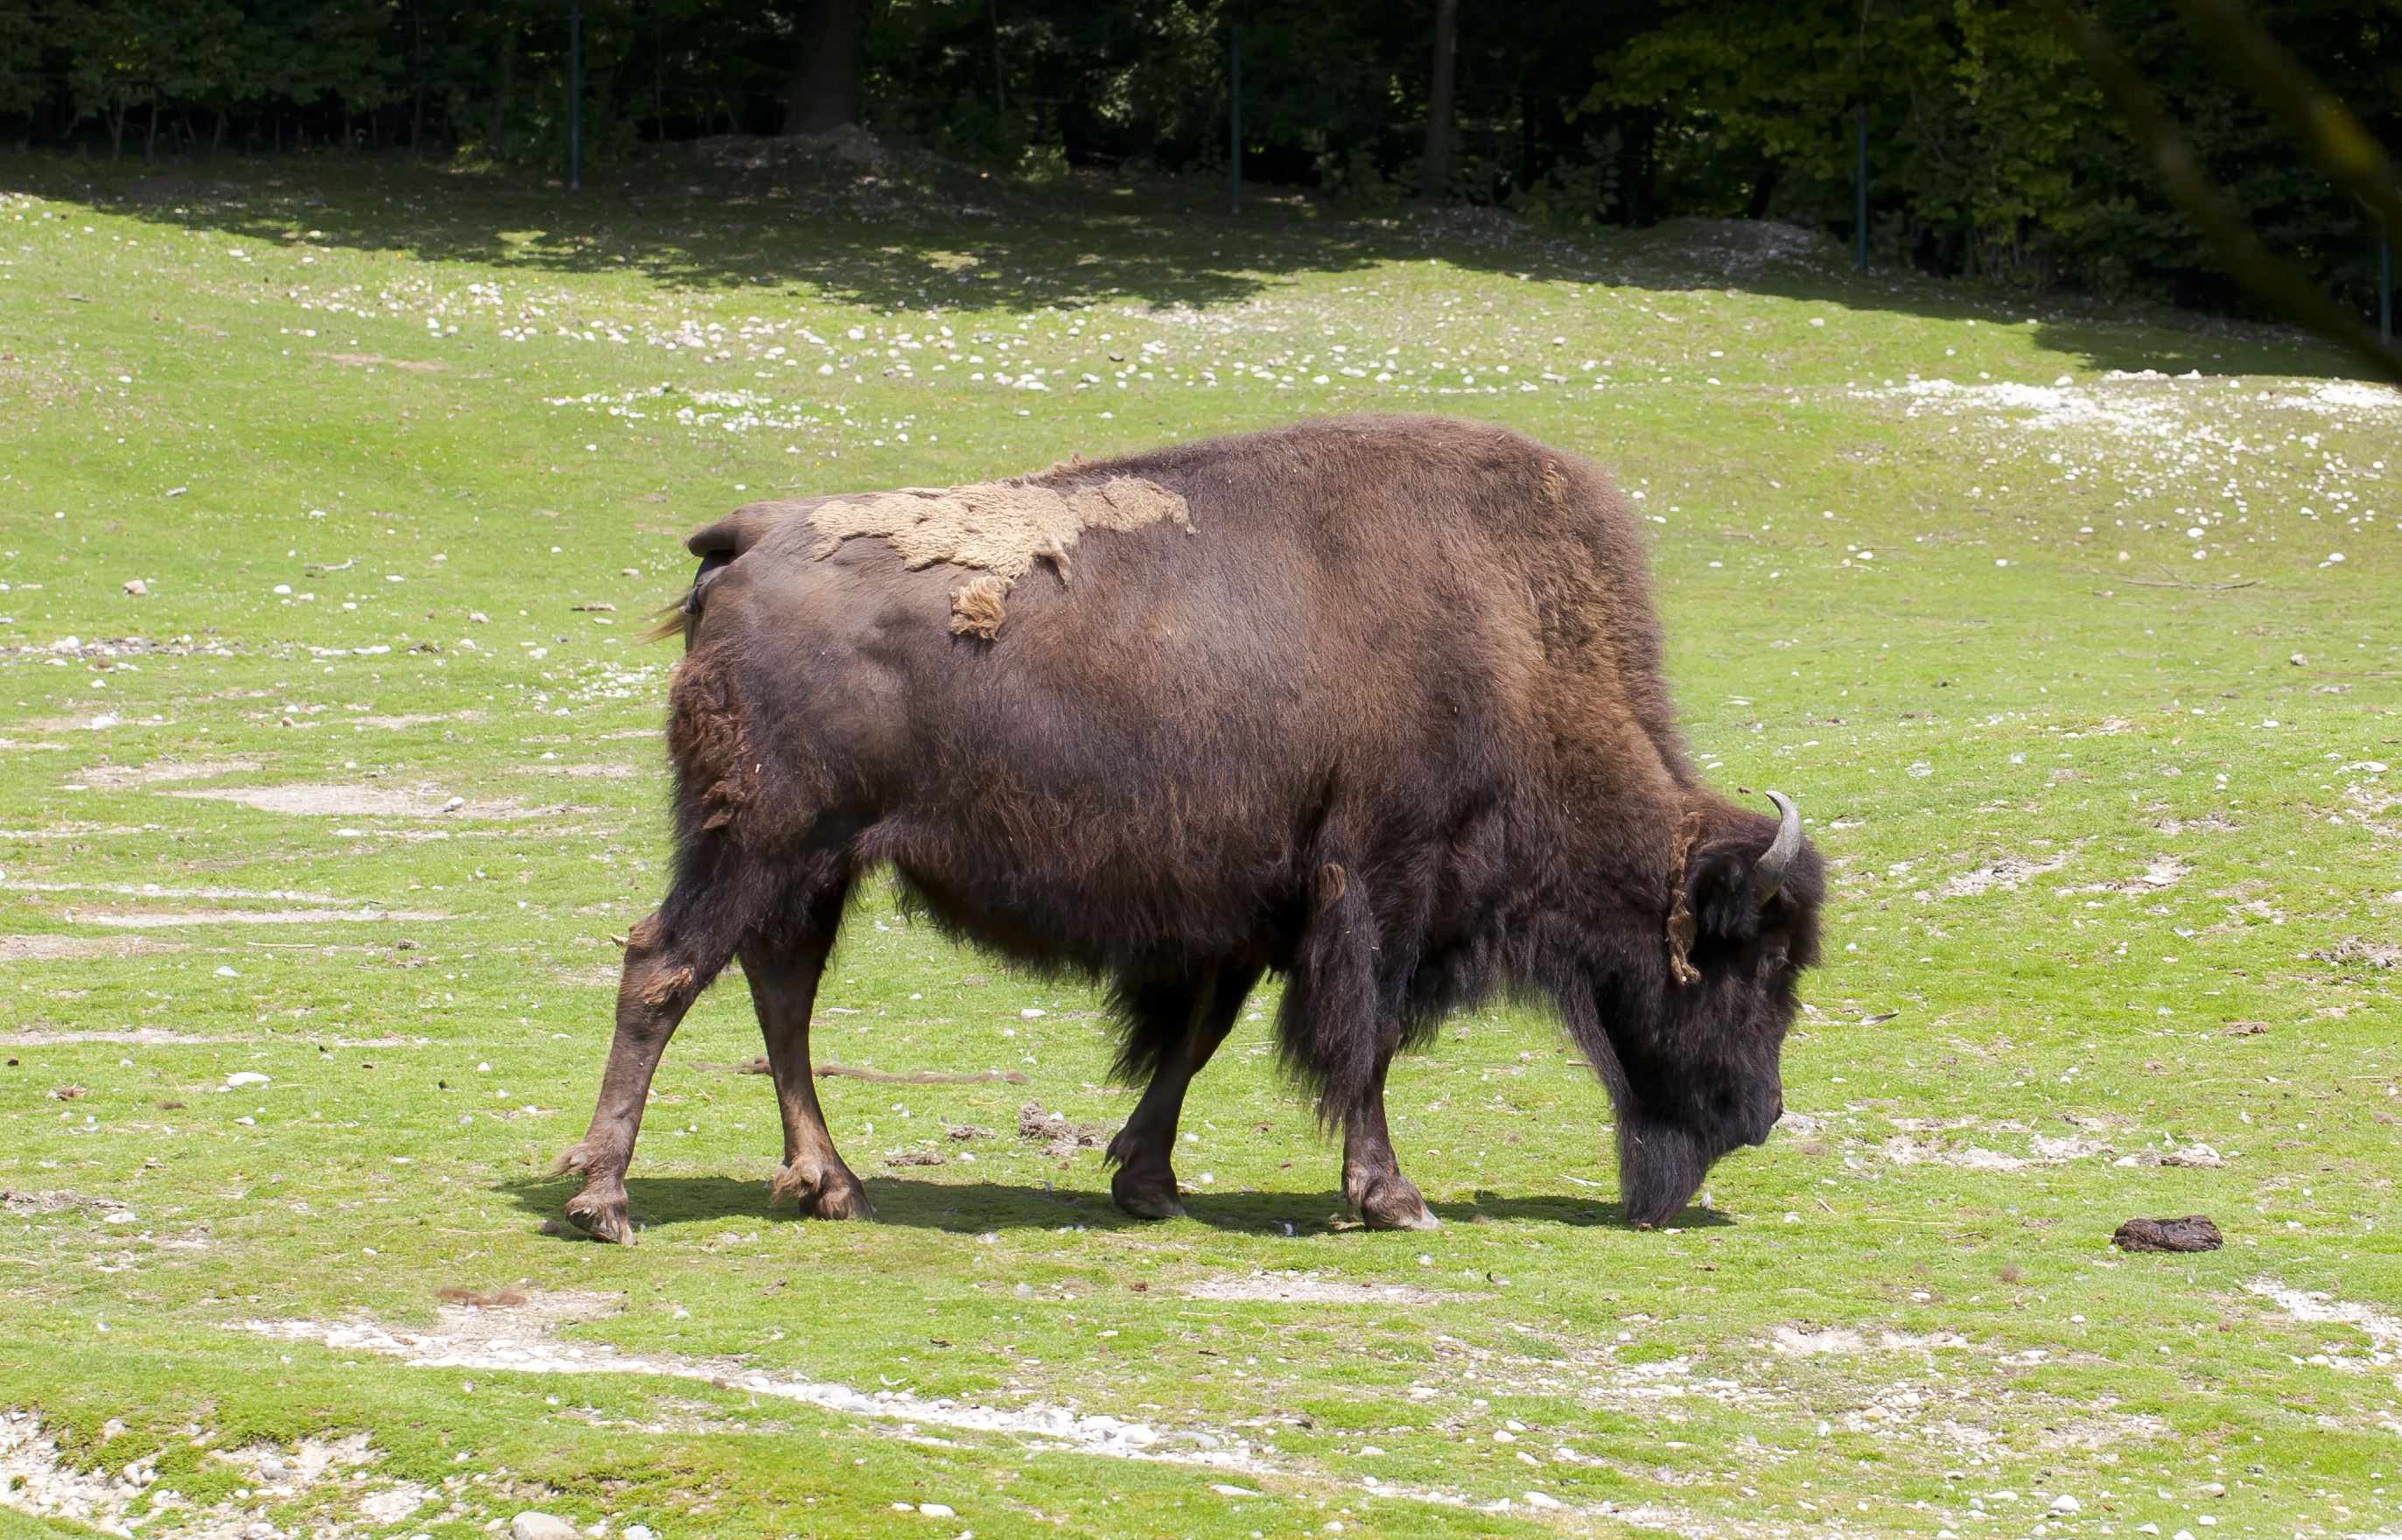 Bisonte europeo (Bison bonasus), Tierpark Hellabrunn, Múnich, Alemania, 2012-06-17, DD 02